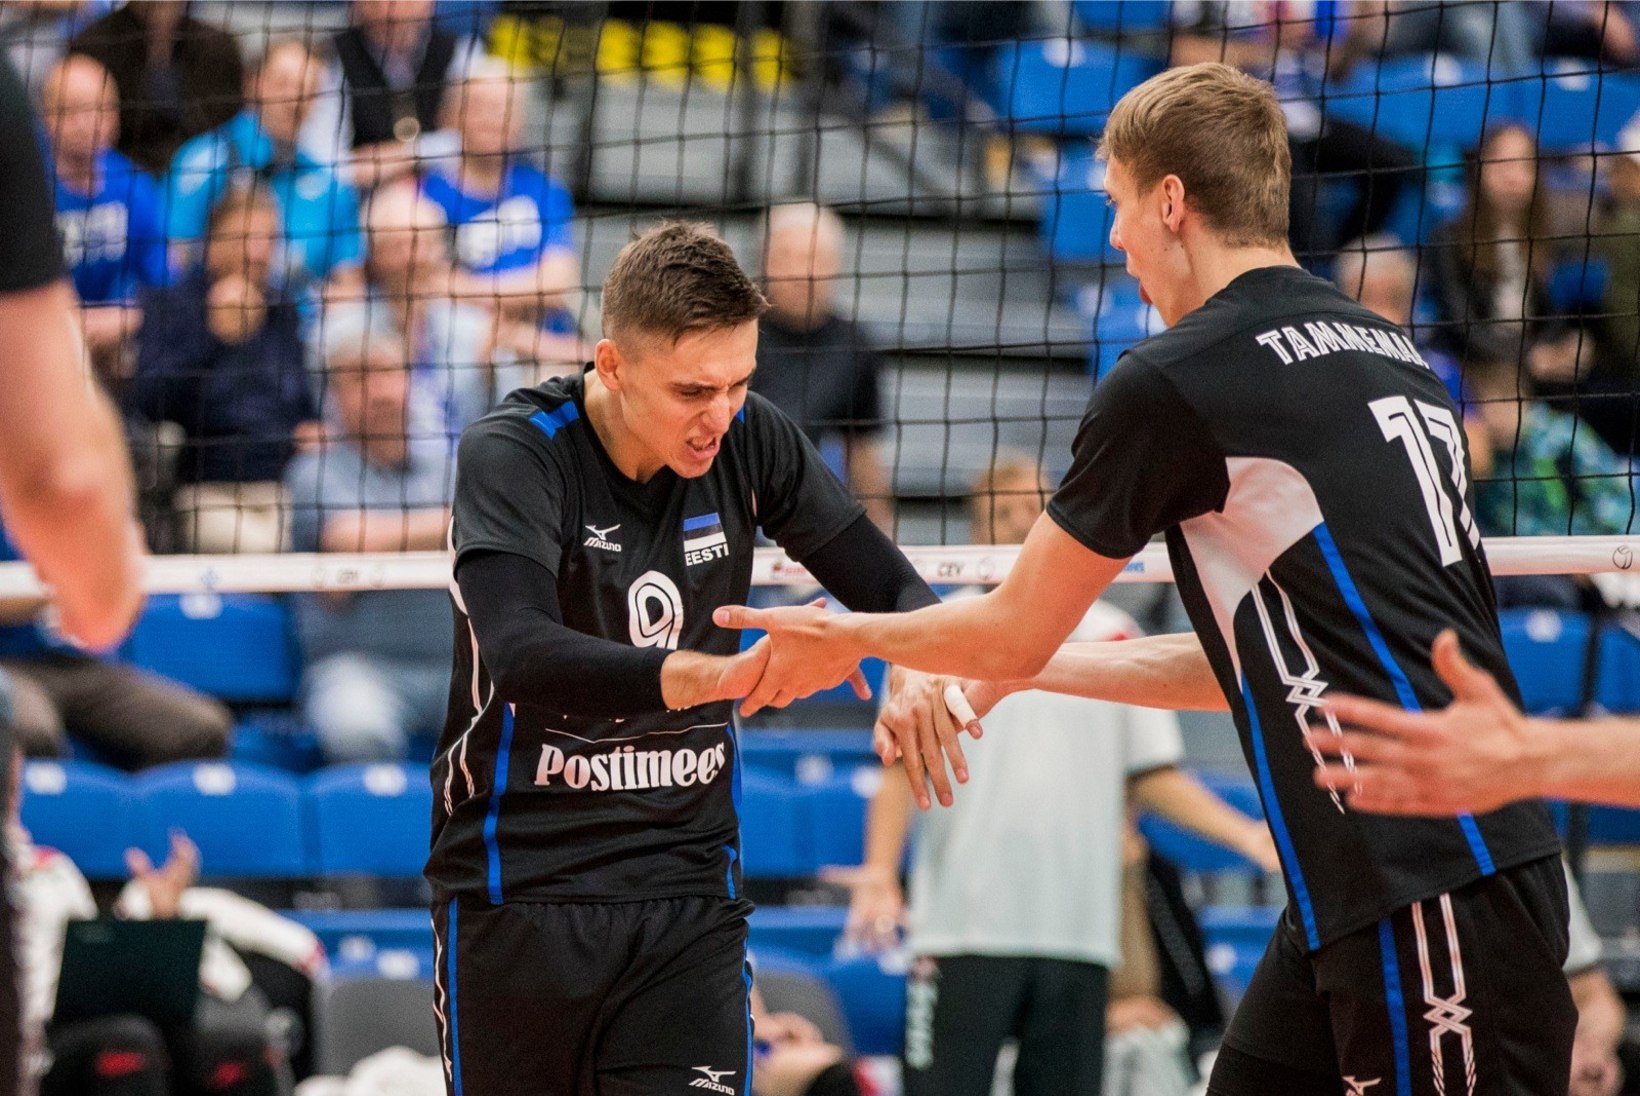 GALERII | SUPER! Eesti võrkpallikoondis alistas hõimuvennad ning astus ajaloolisele MM-piletile sammu lähemale